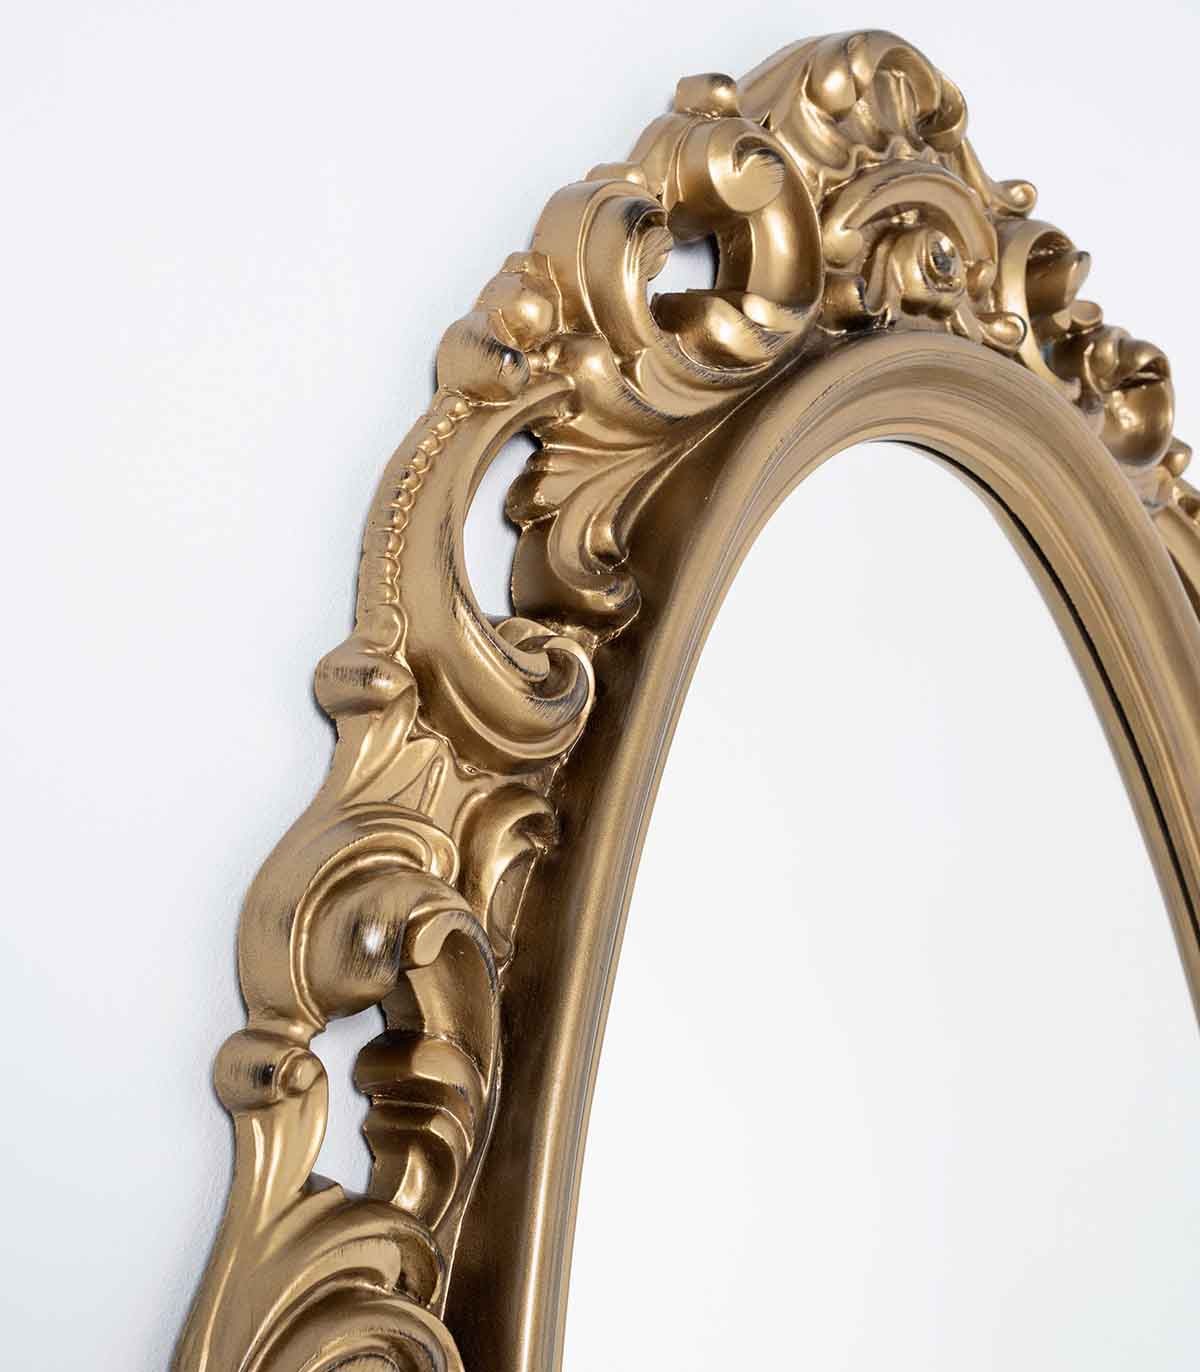 Espejo estilo clasico SALOME Oro, Espejos de pared